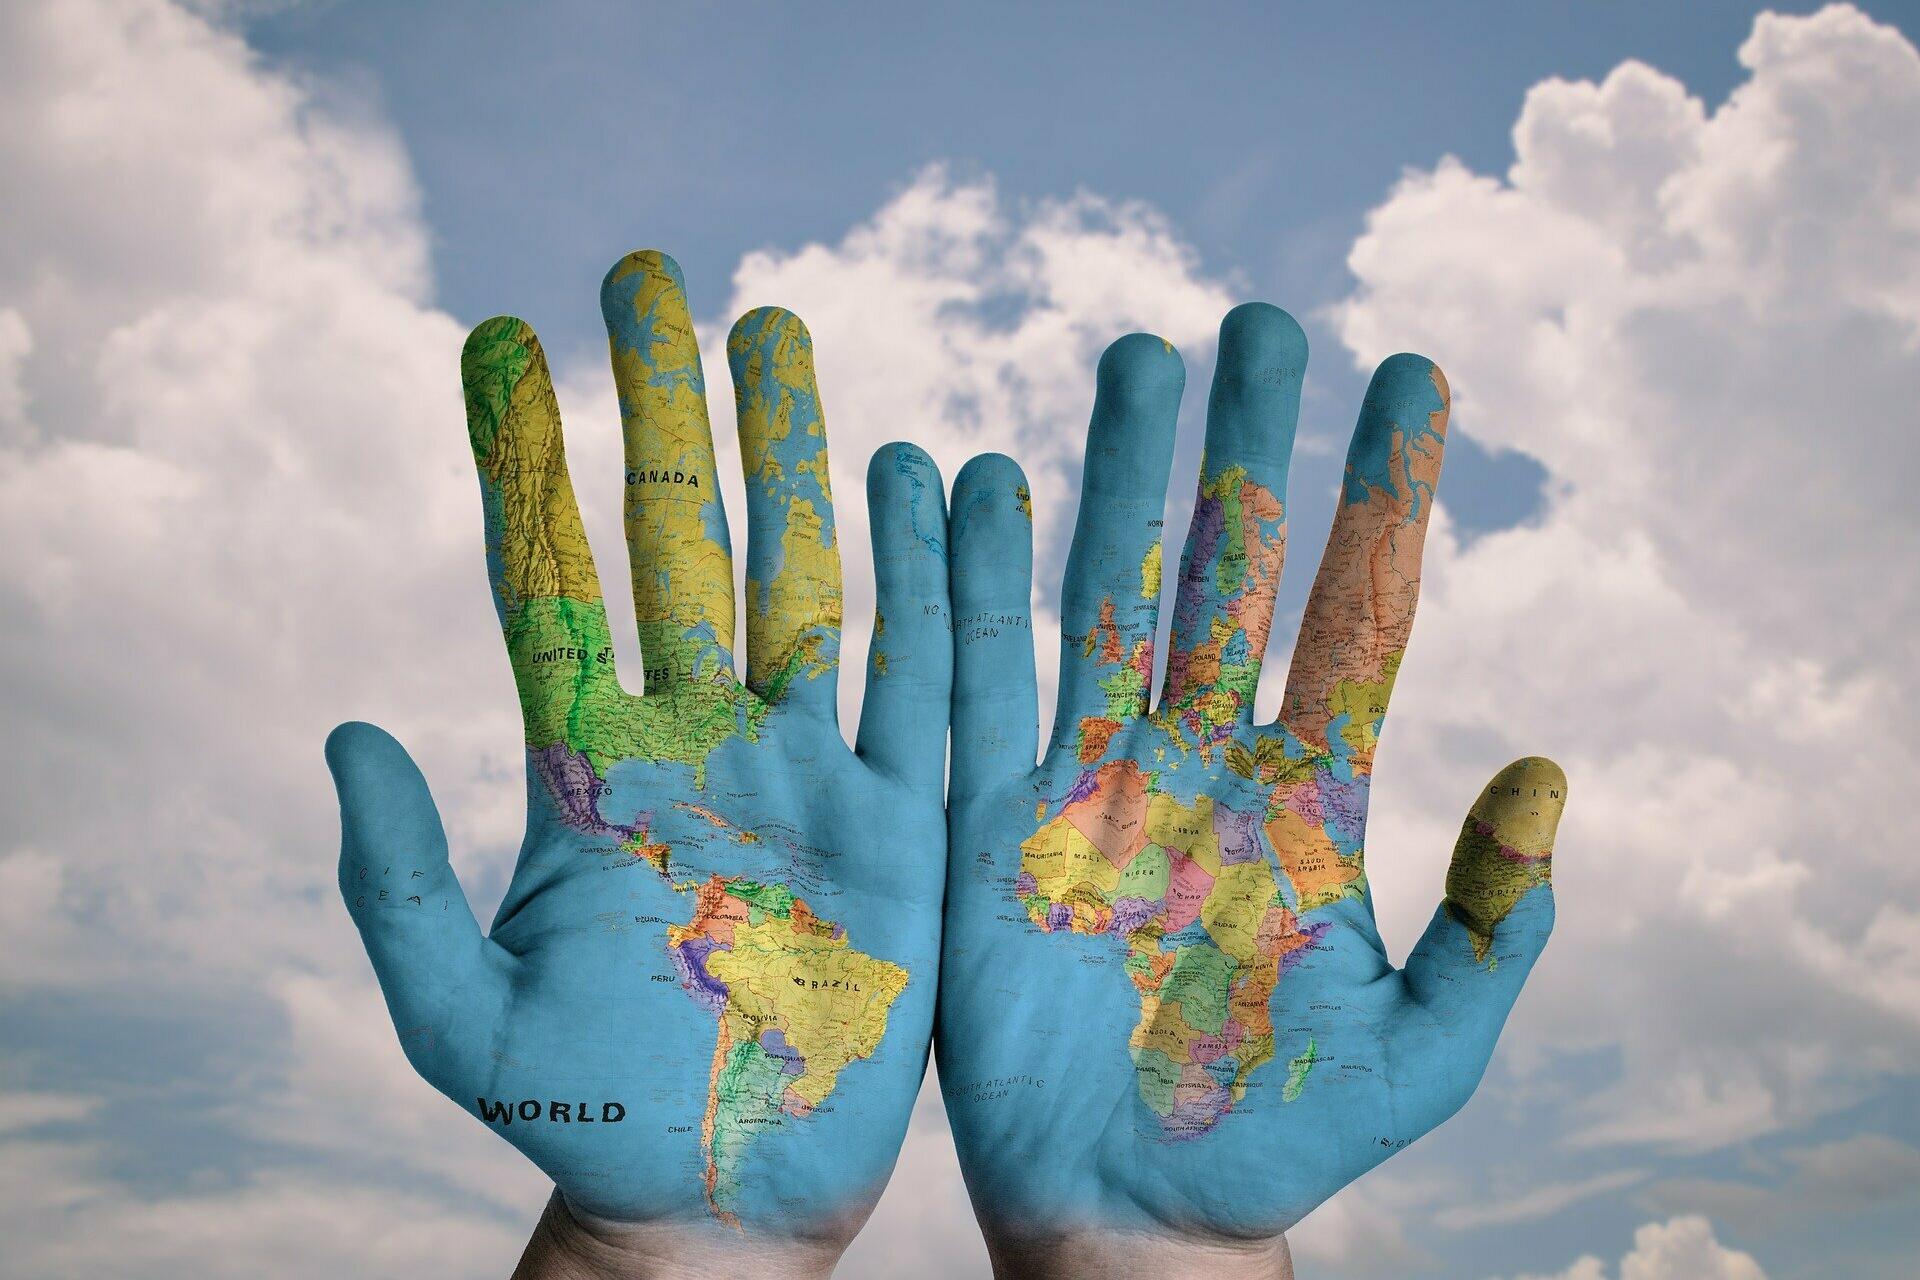 Zwei aufgeschlagene Hände mit aufgezeichneter Weltkarte.